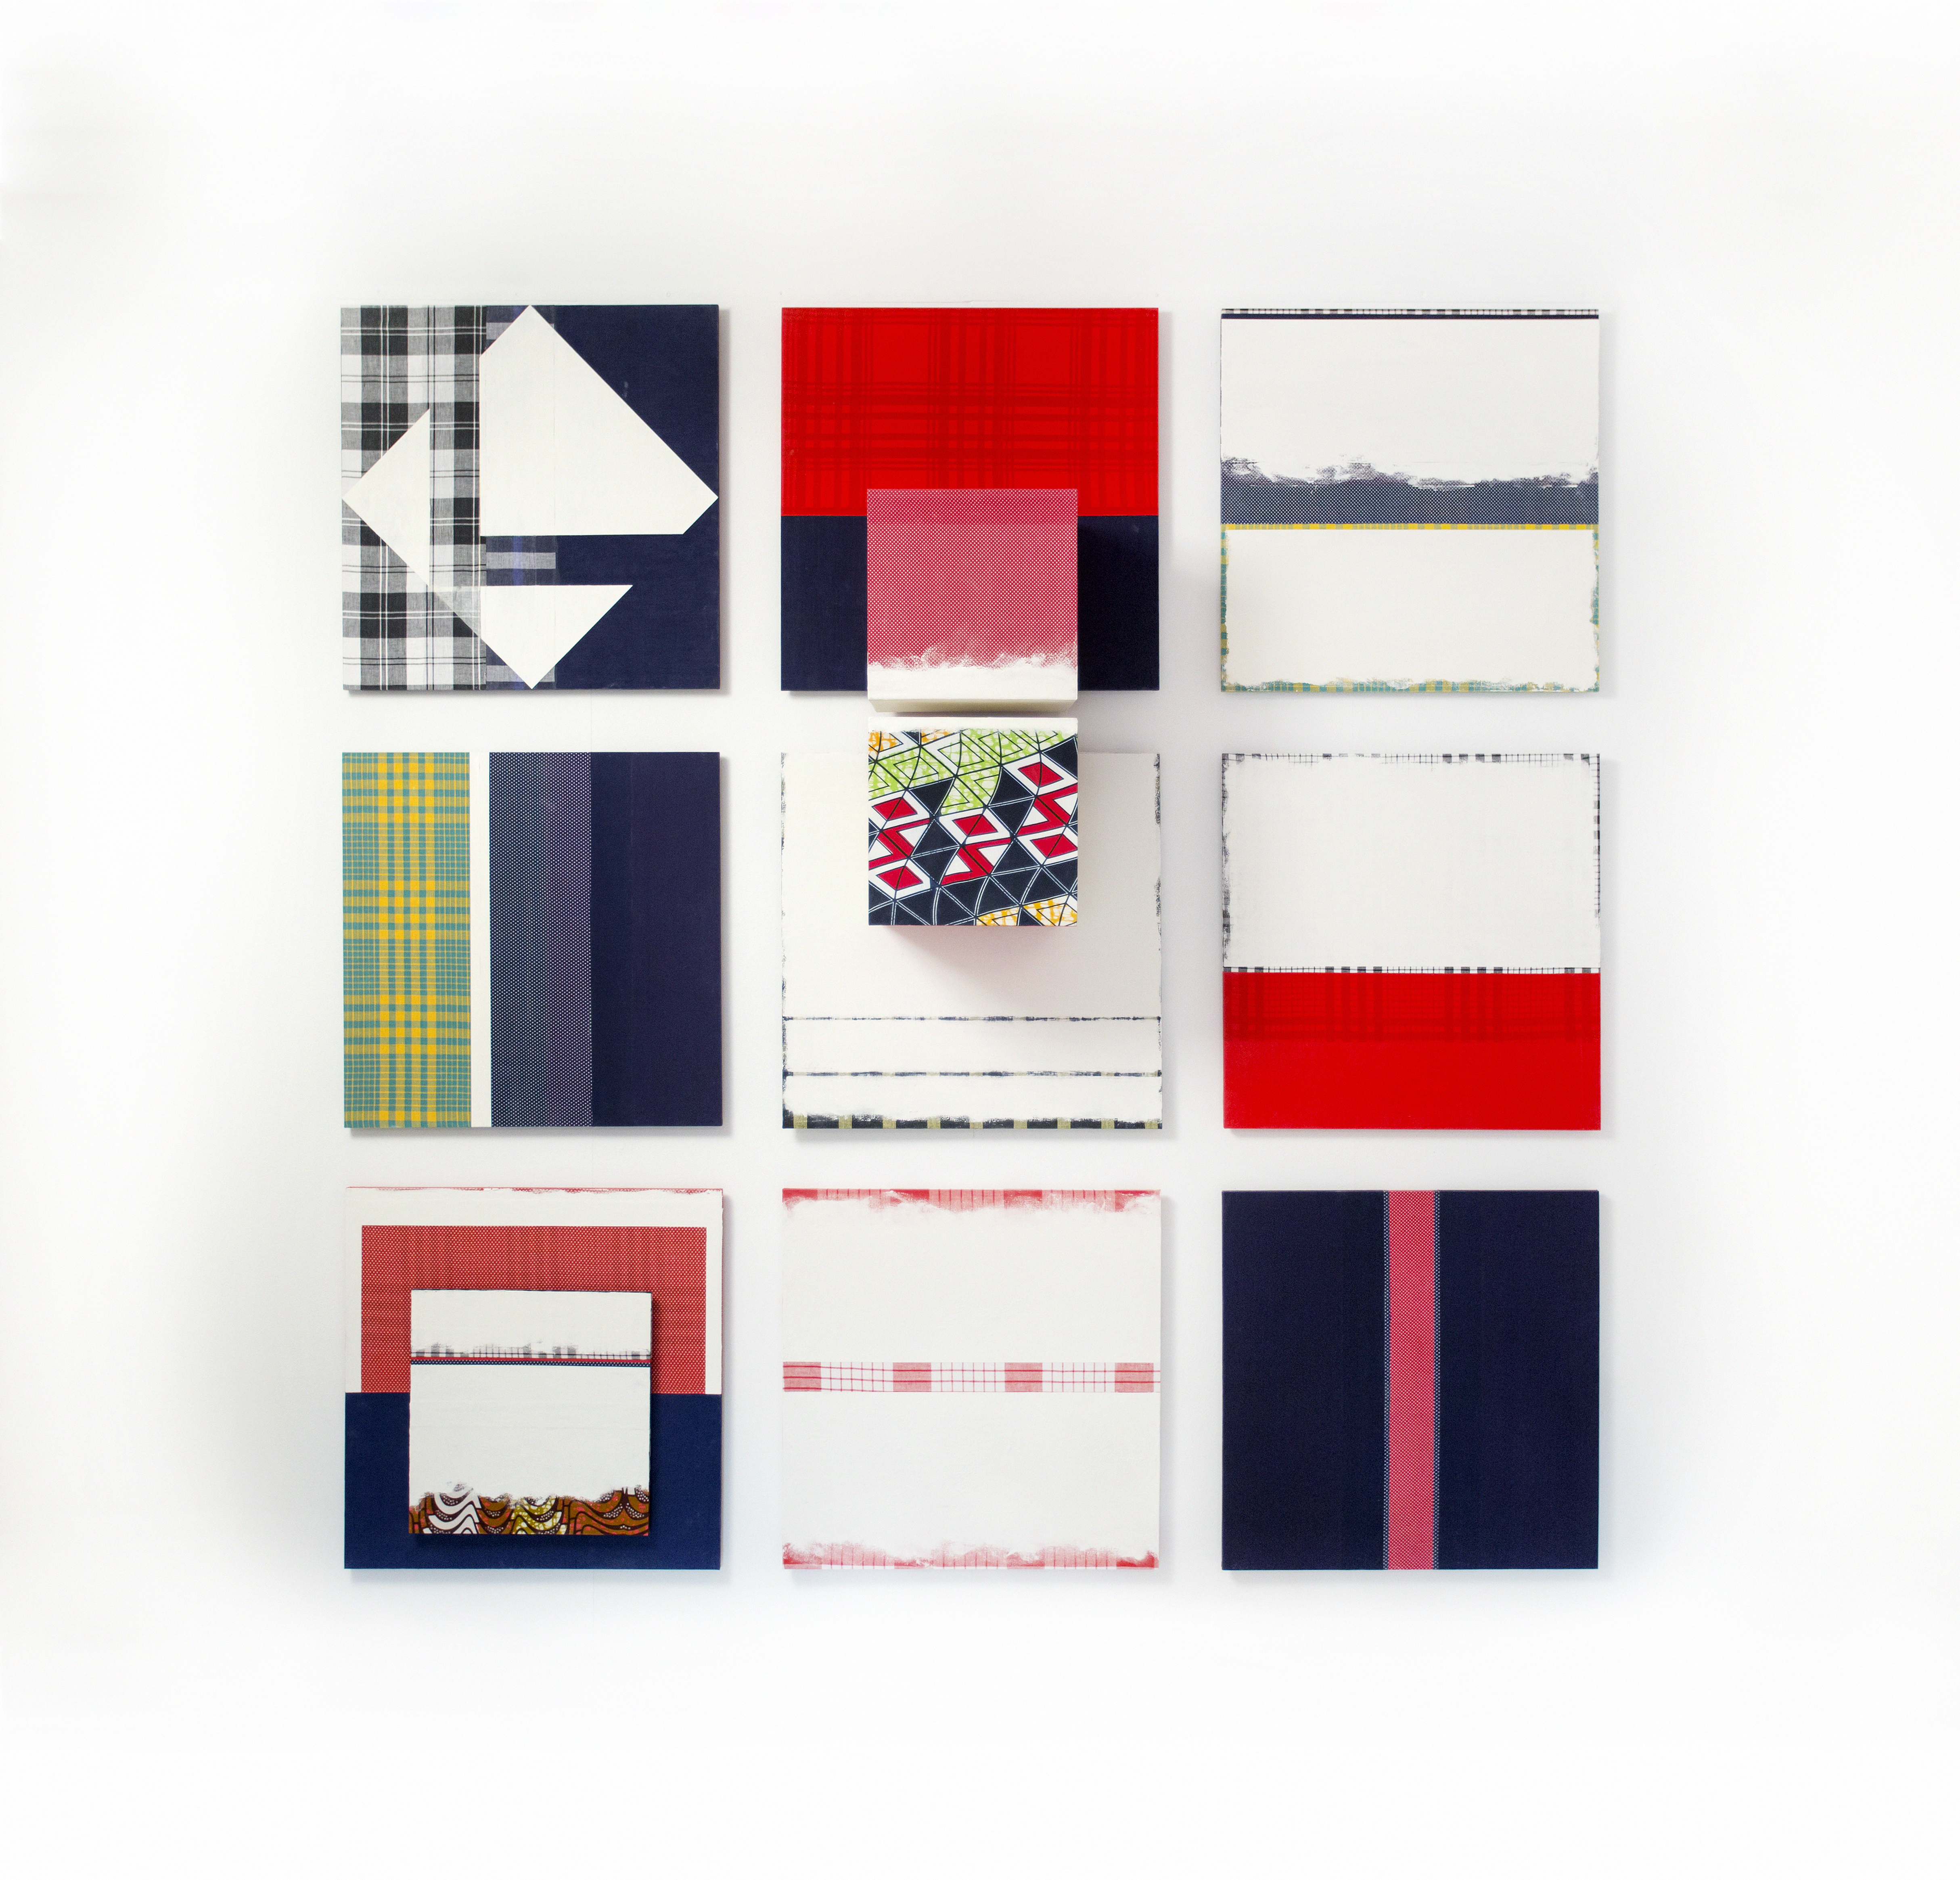 FODU. Composition 24, special gemaakt van 24 panelen. Hout, textiel, kaolien, 2015.